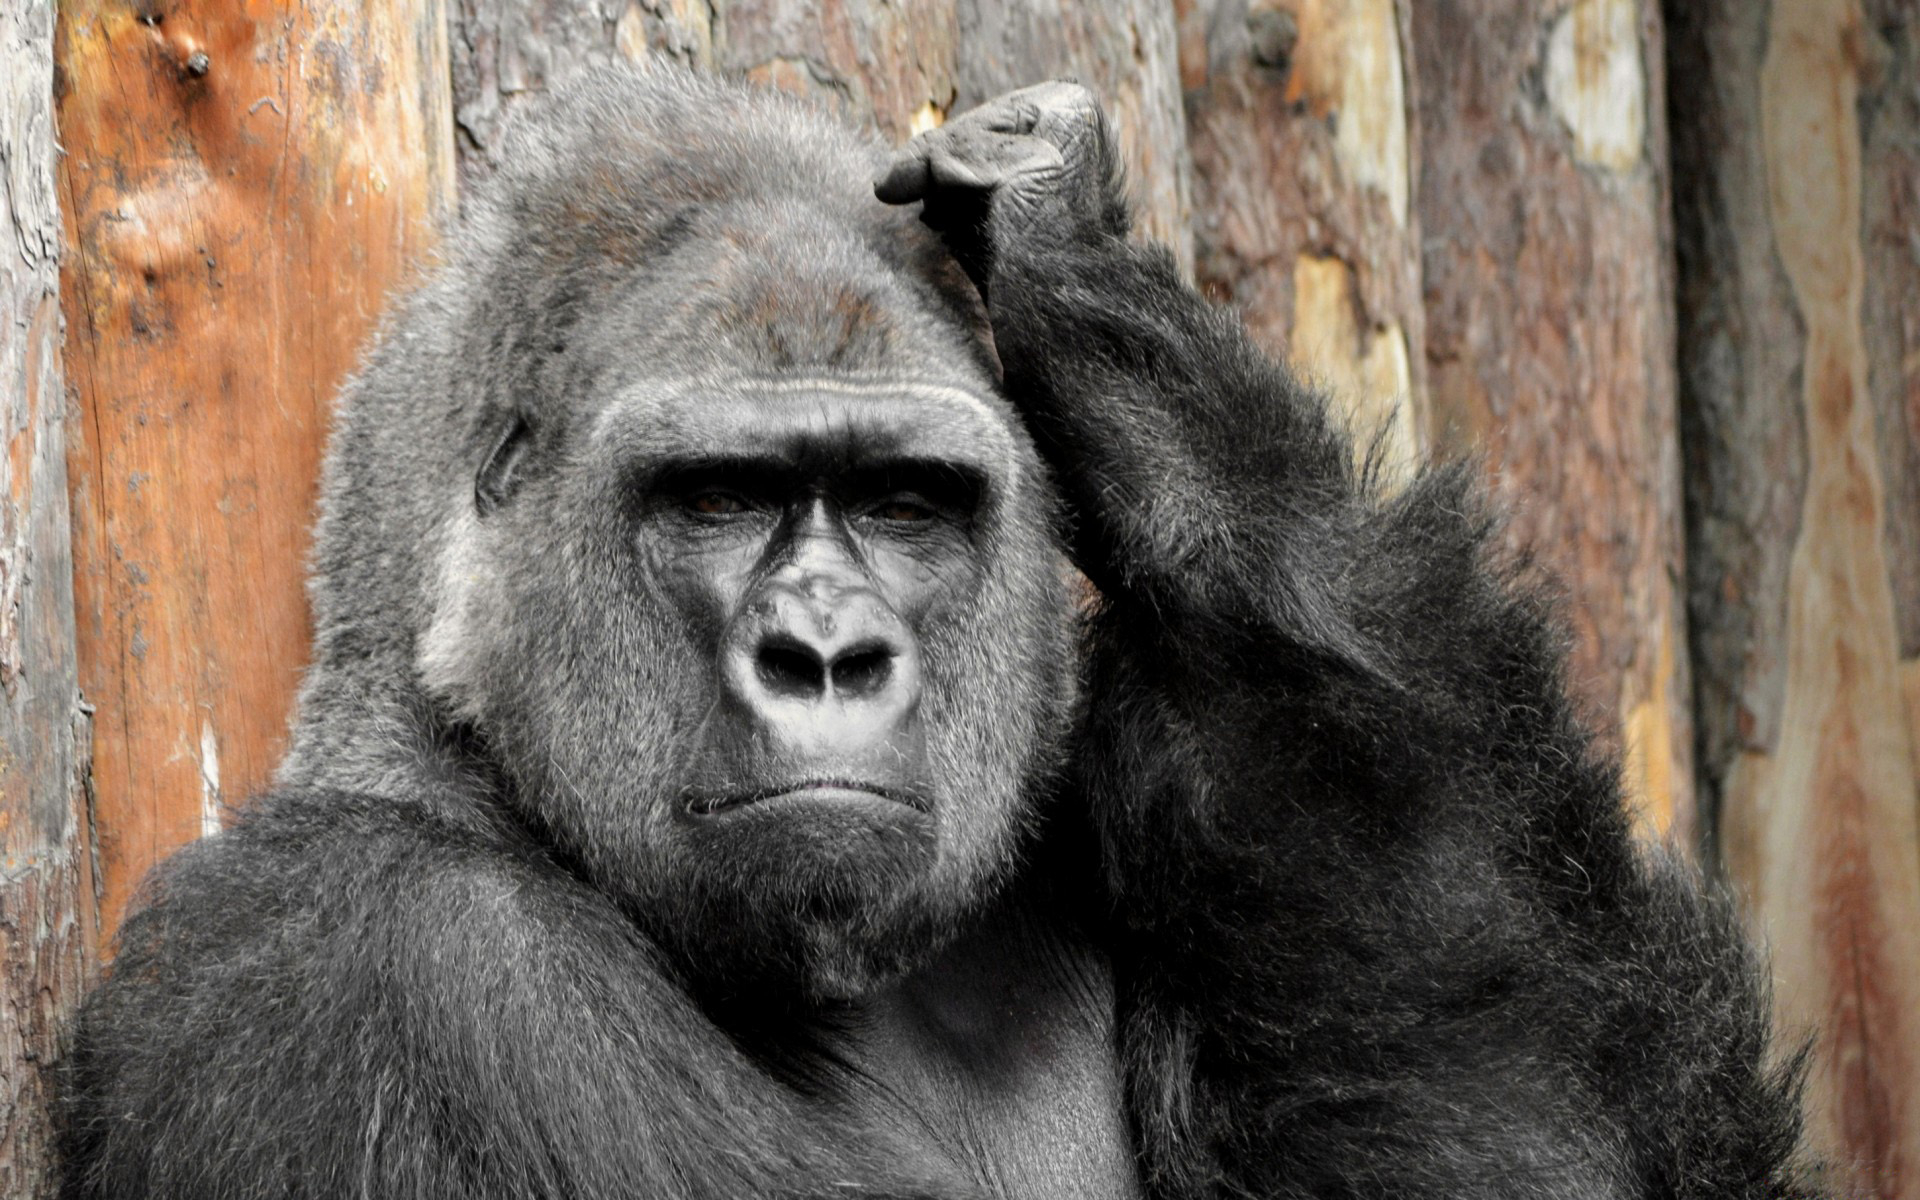 720p gorilla image